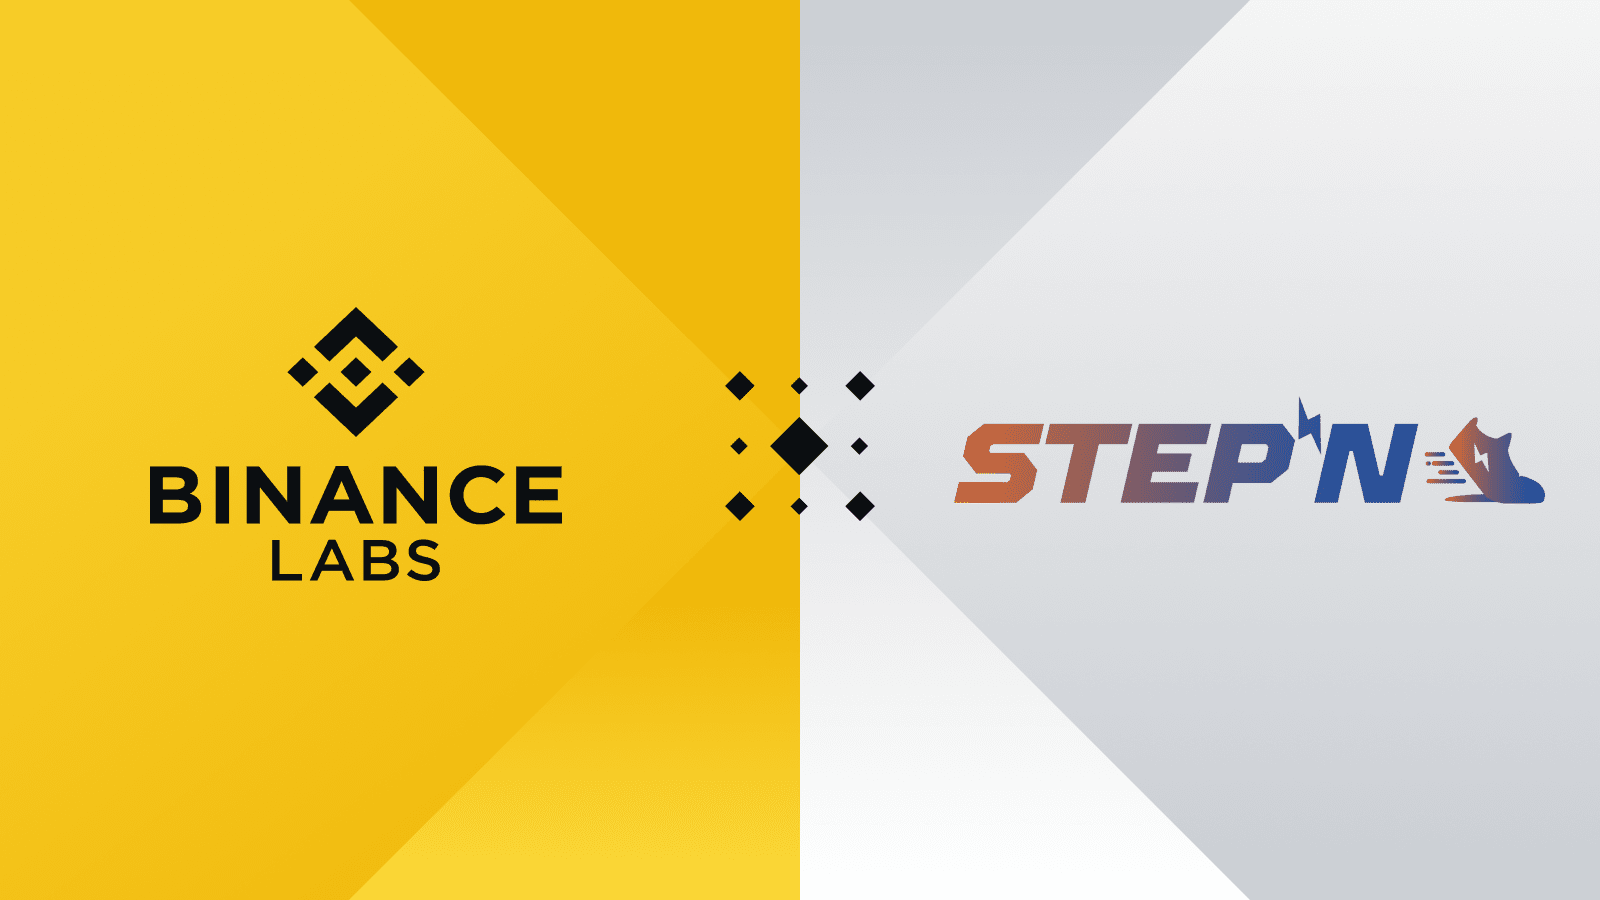 Binance Labs ने STEPN में रणनीतिक निवेश की घोषणा की